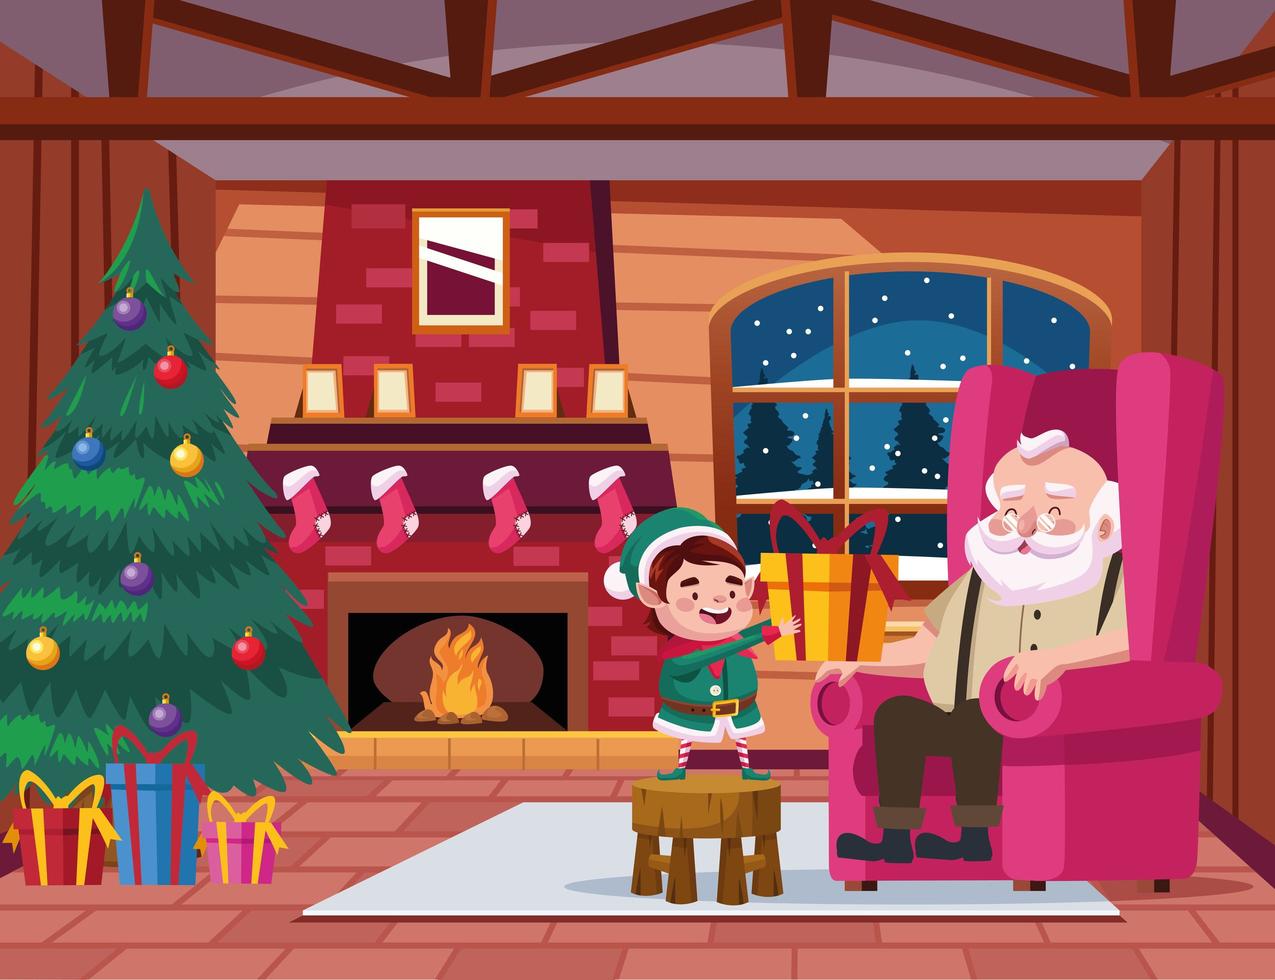 söt jultomten och hjälpare med gåva i husscenen vektor